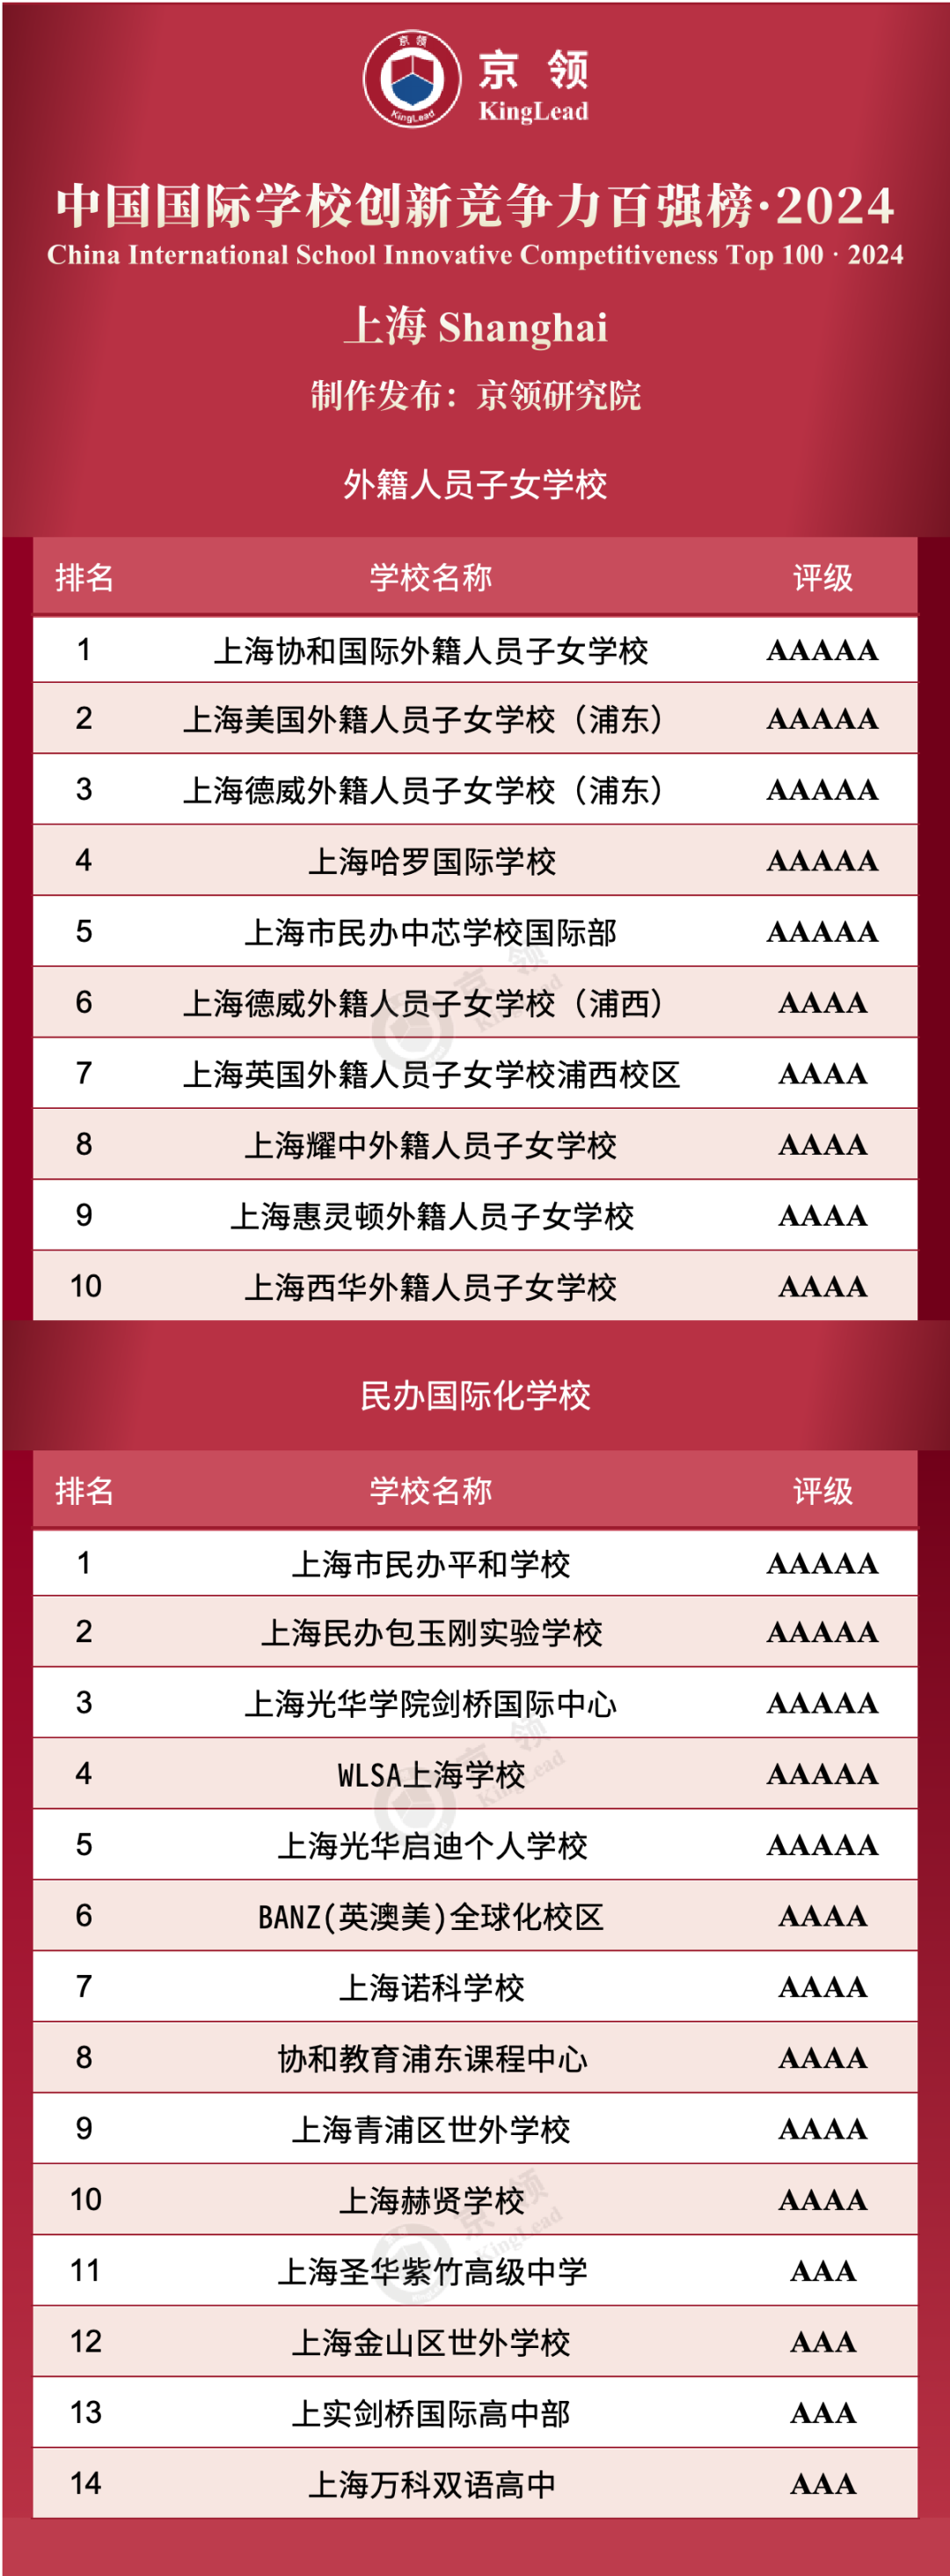 上海共24所国际学校上榜创新榜，其中外籍人员子女学校上榜10所，民办国际化学校上榜14所。